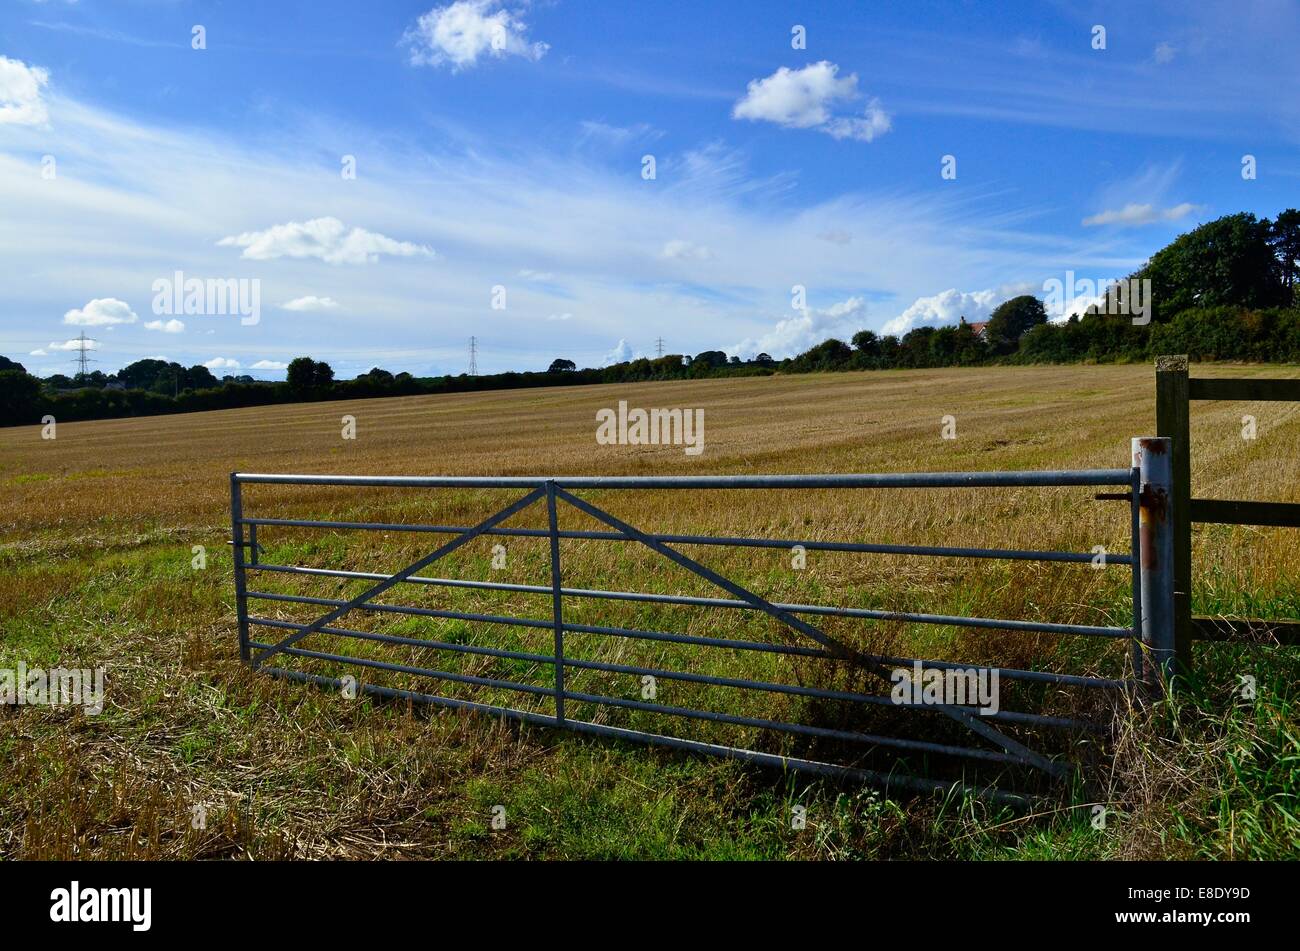 Field in the village of Laleston, near Bridgend, South Wales, UK Stock Photo